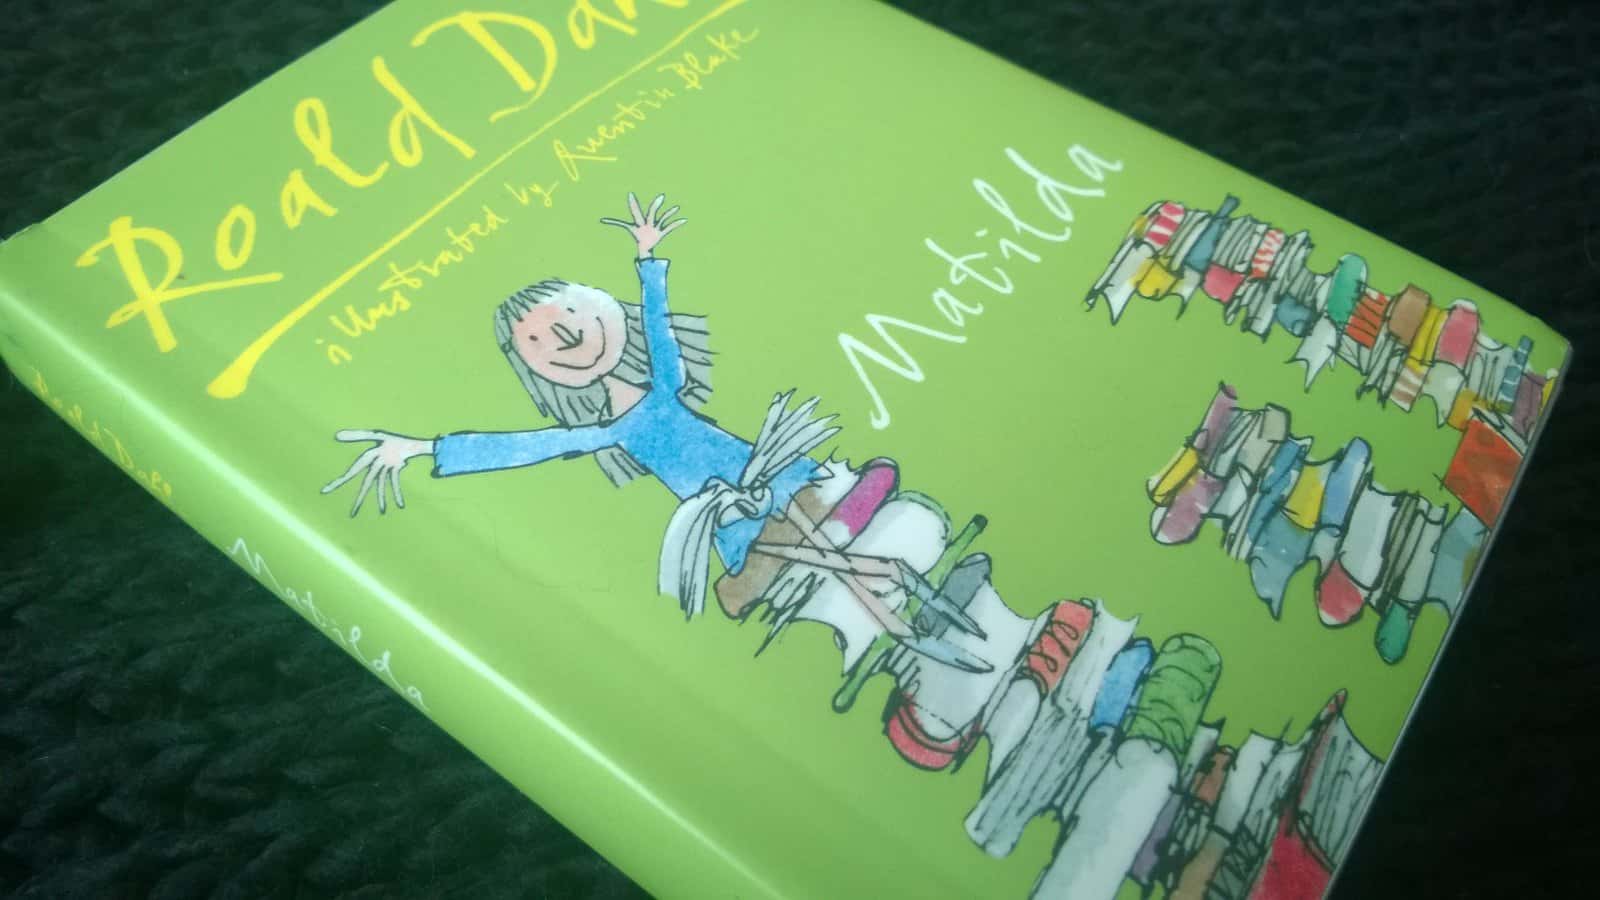 Roald Dahl’s Matilda facts